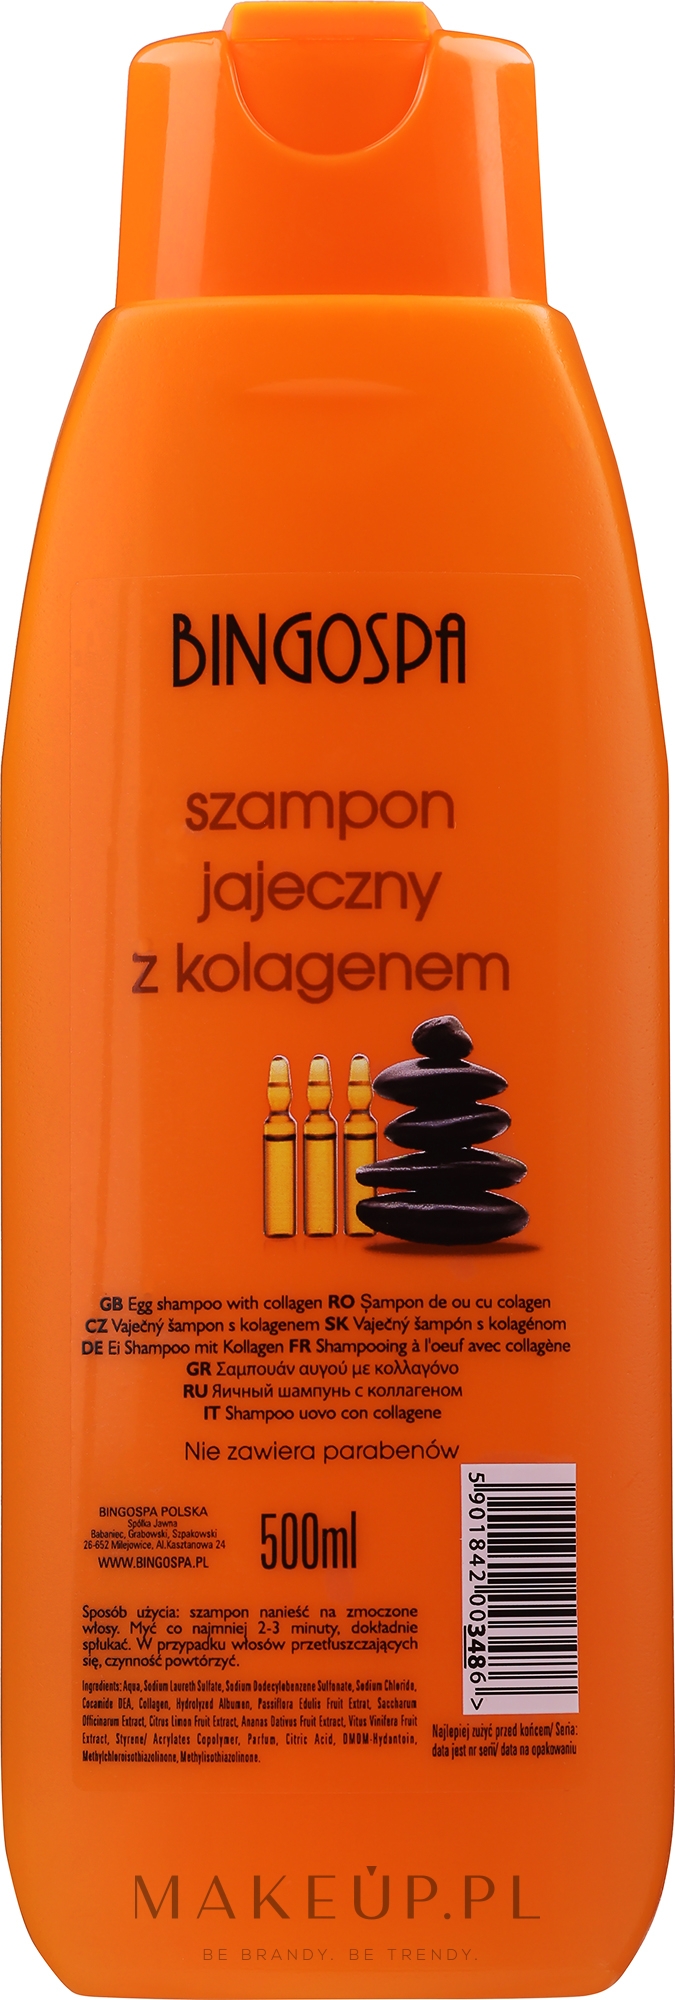 bingospa szampon jajeczny z kolagenem